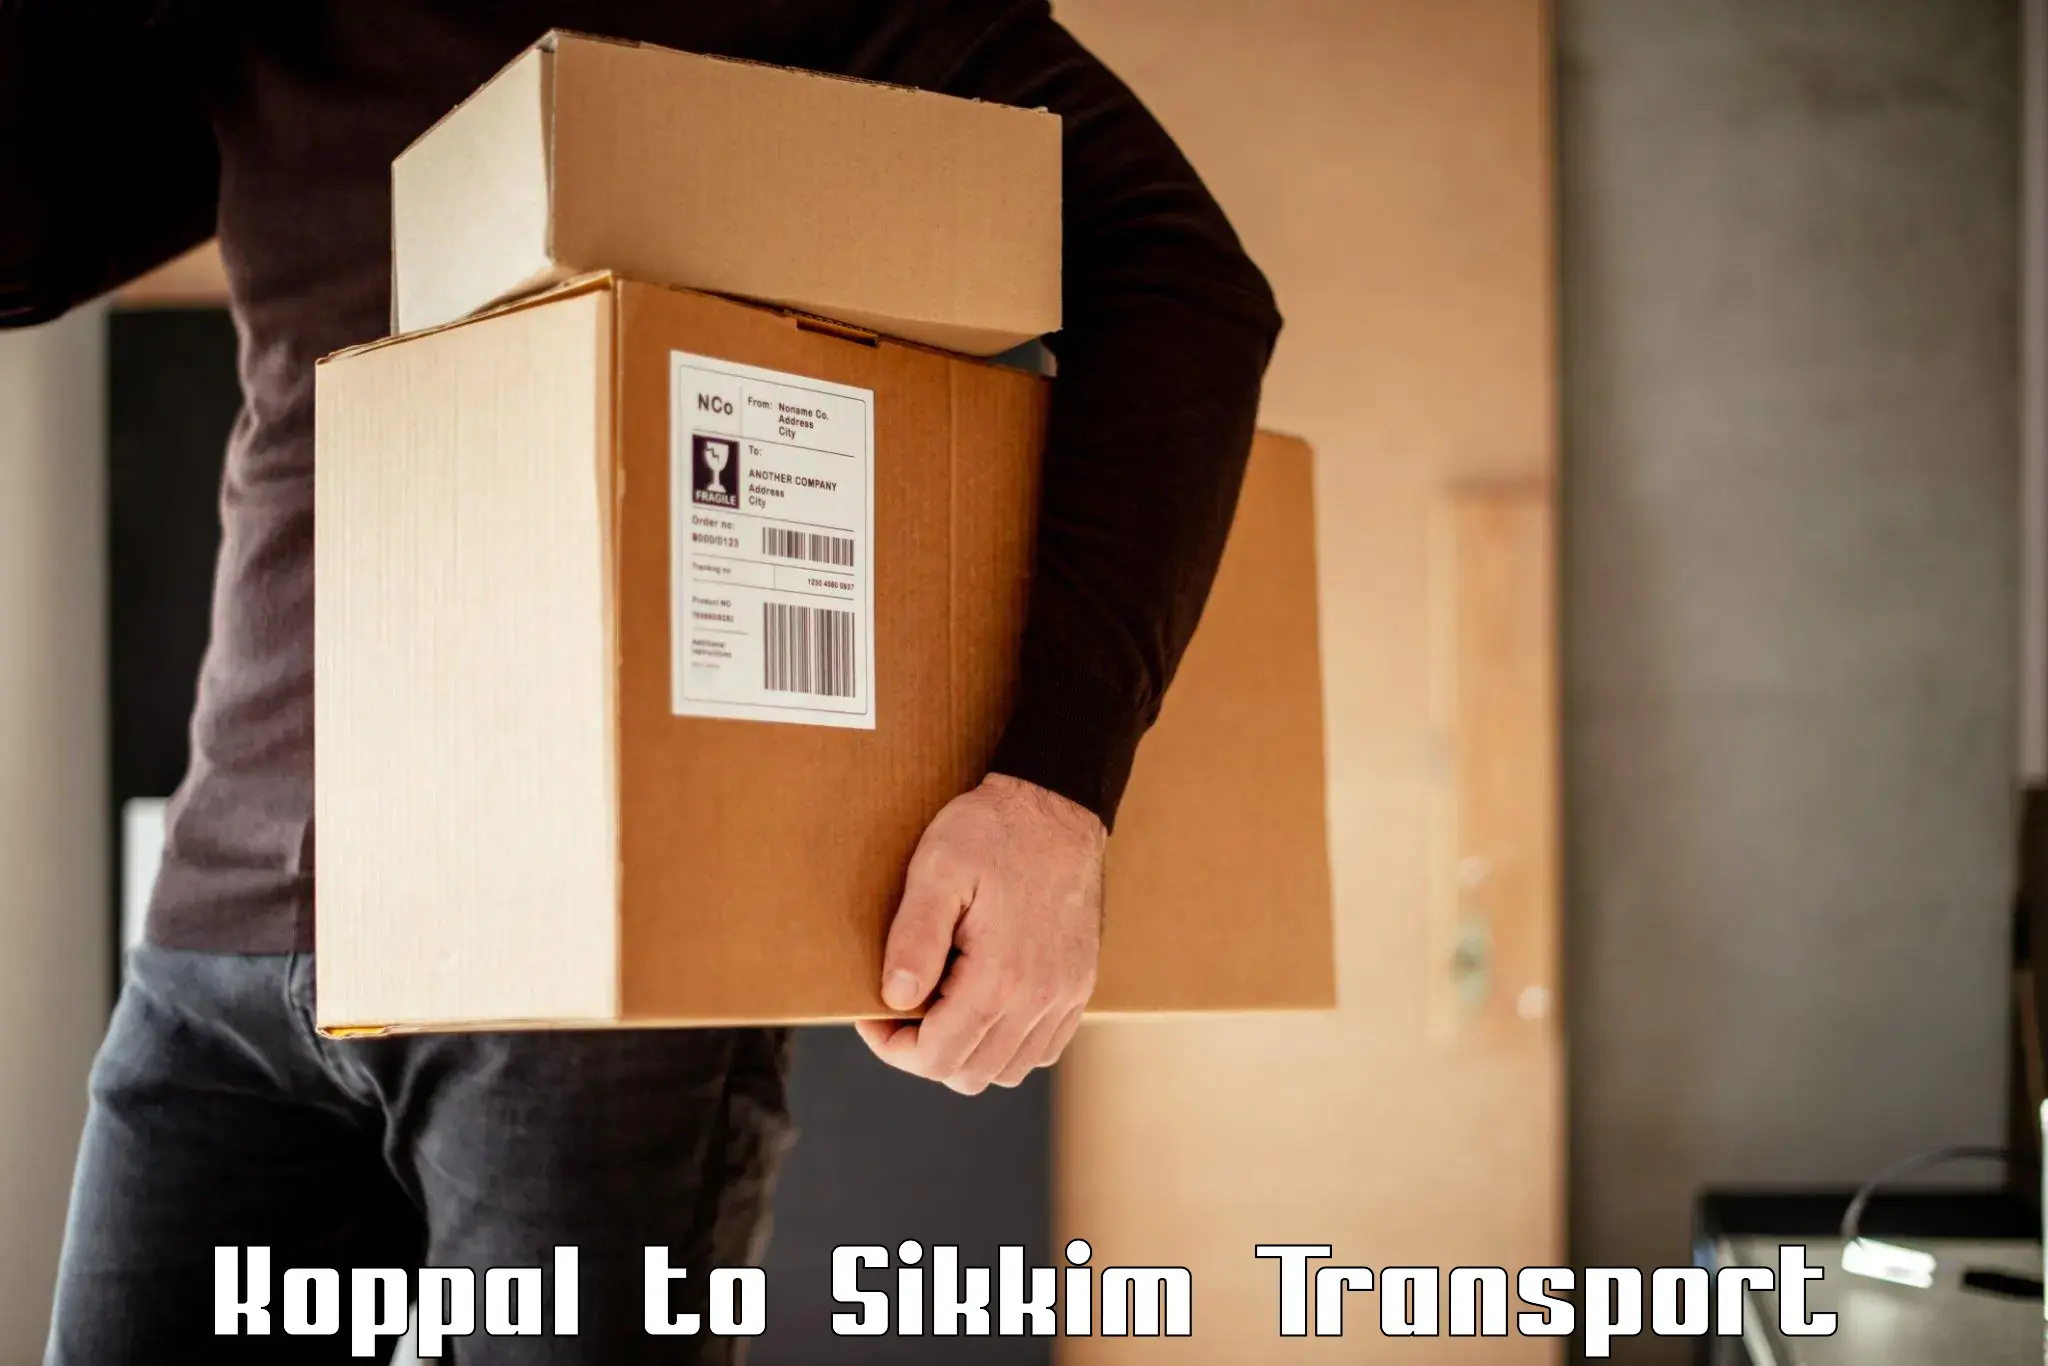 Nearest transport service Koppal to Sikkim